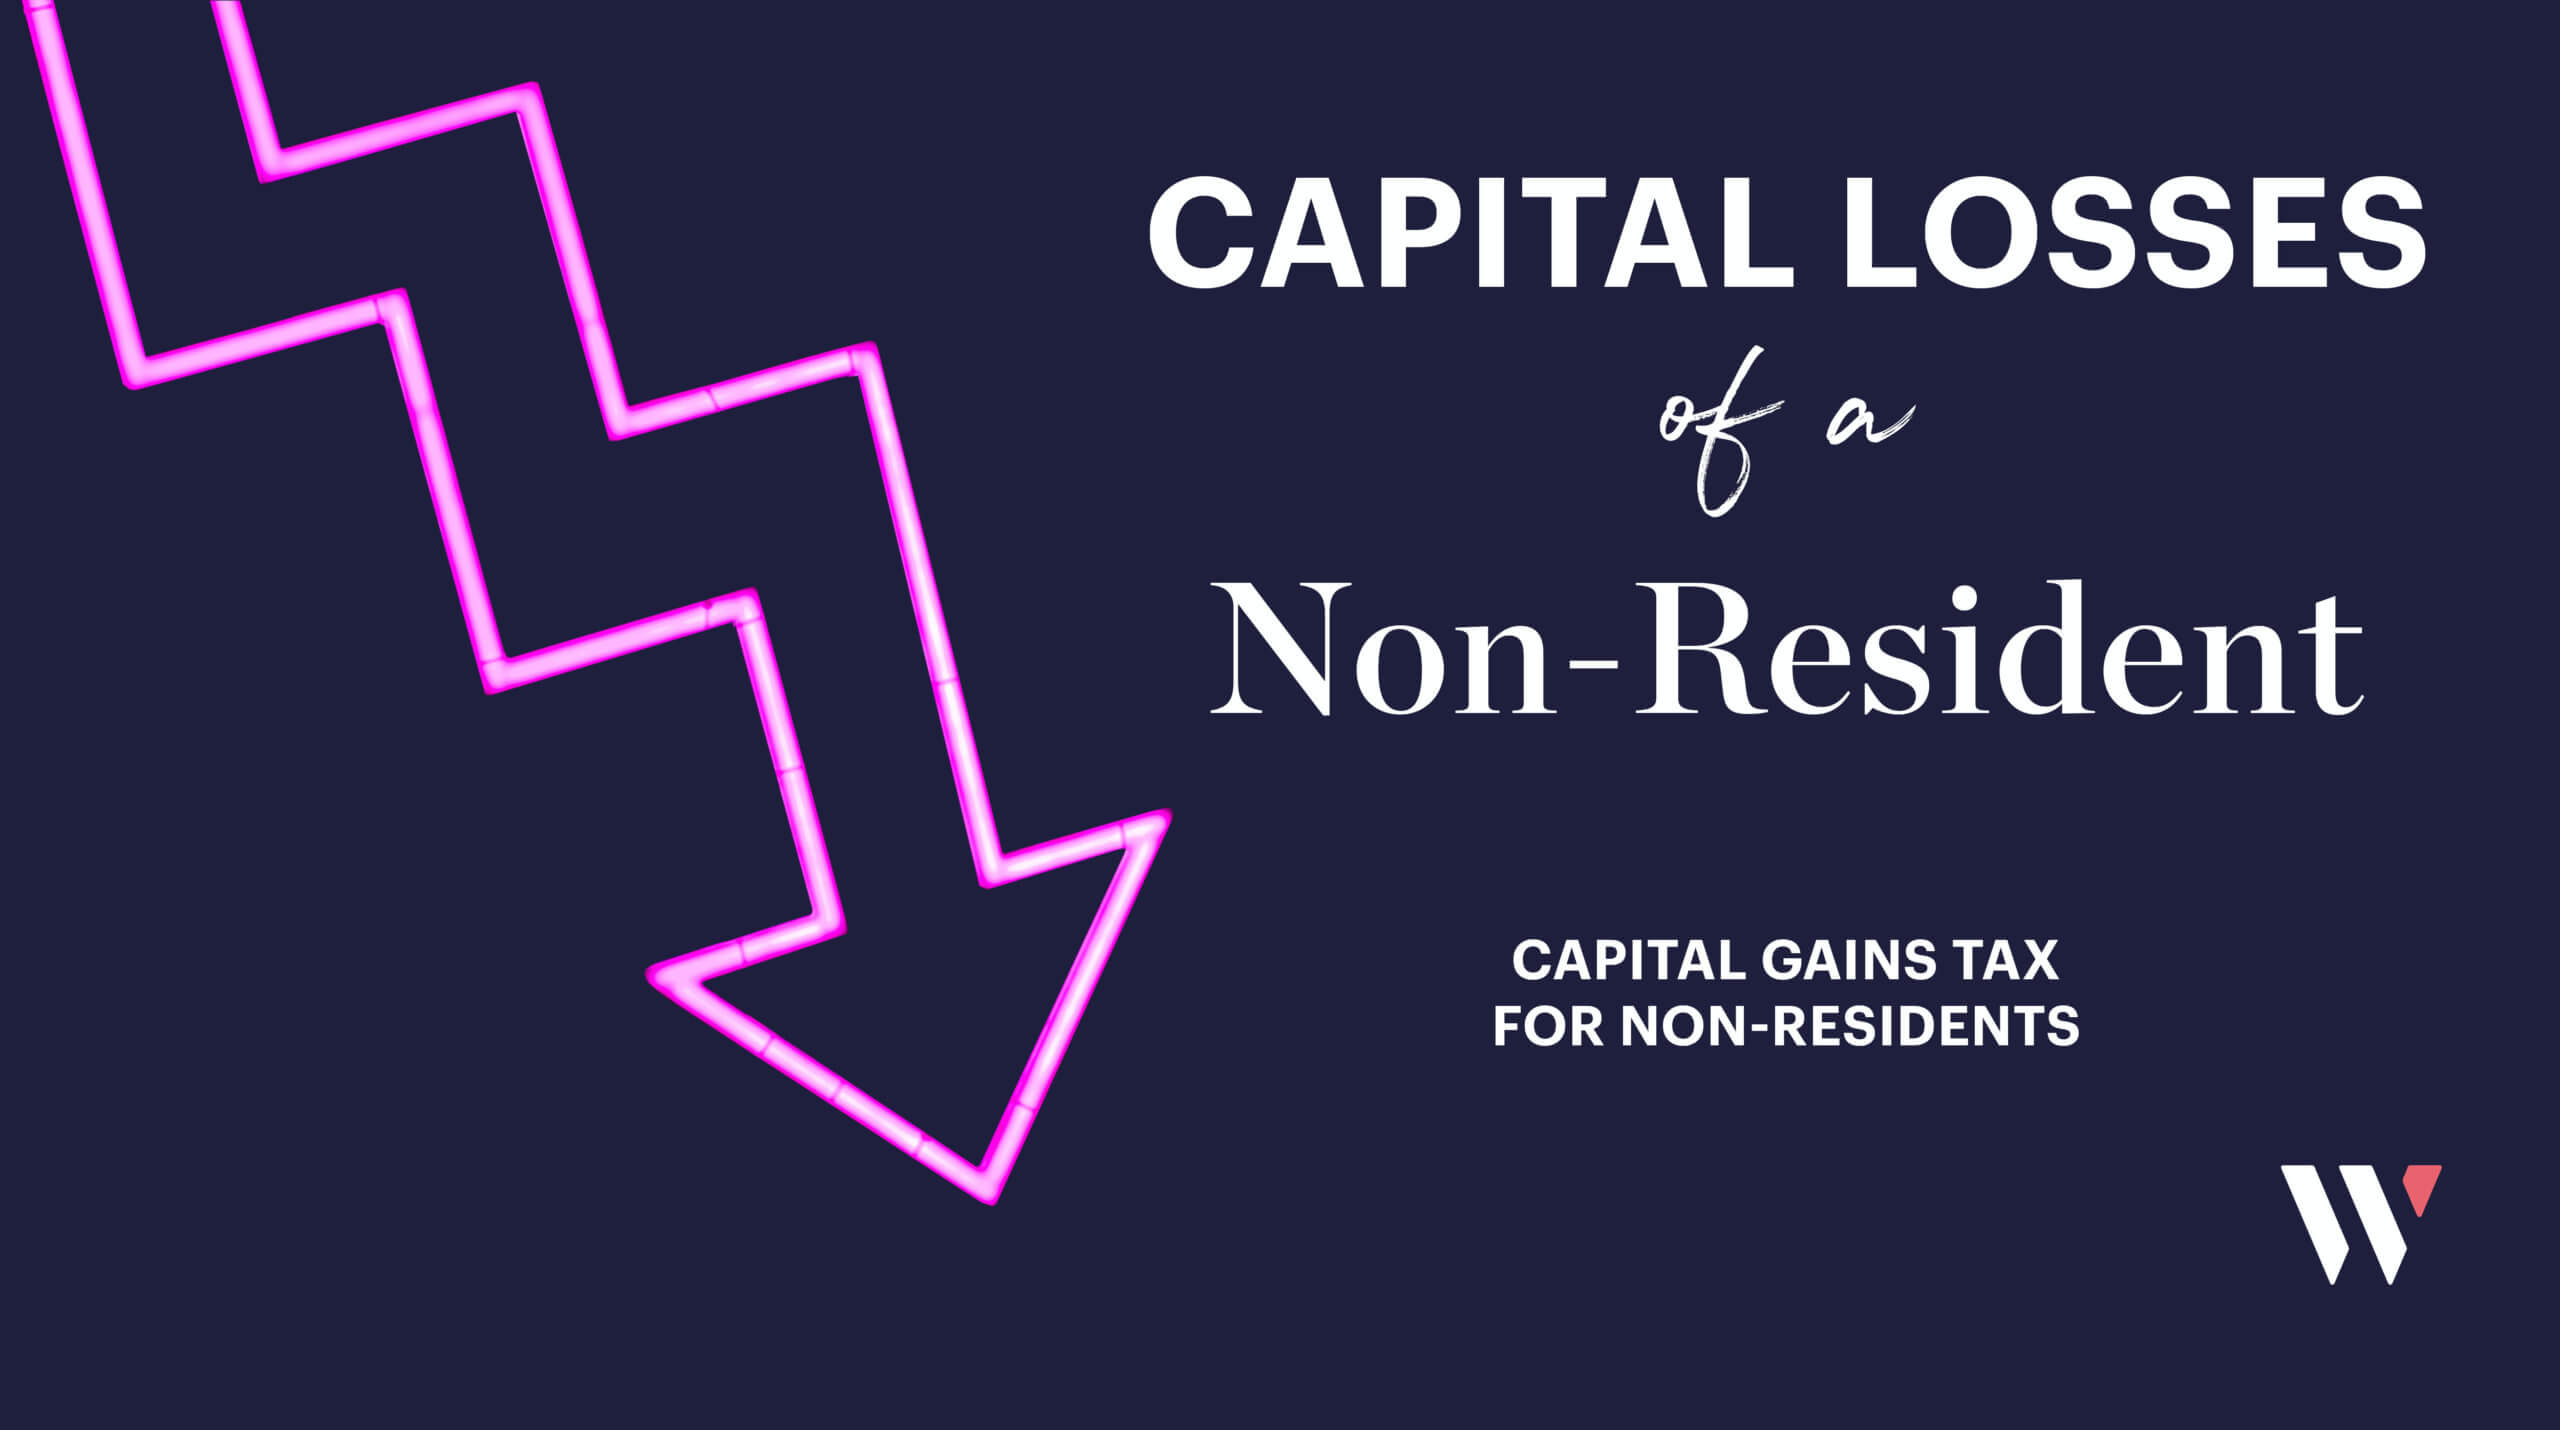 Capital losses of a NR